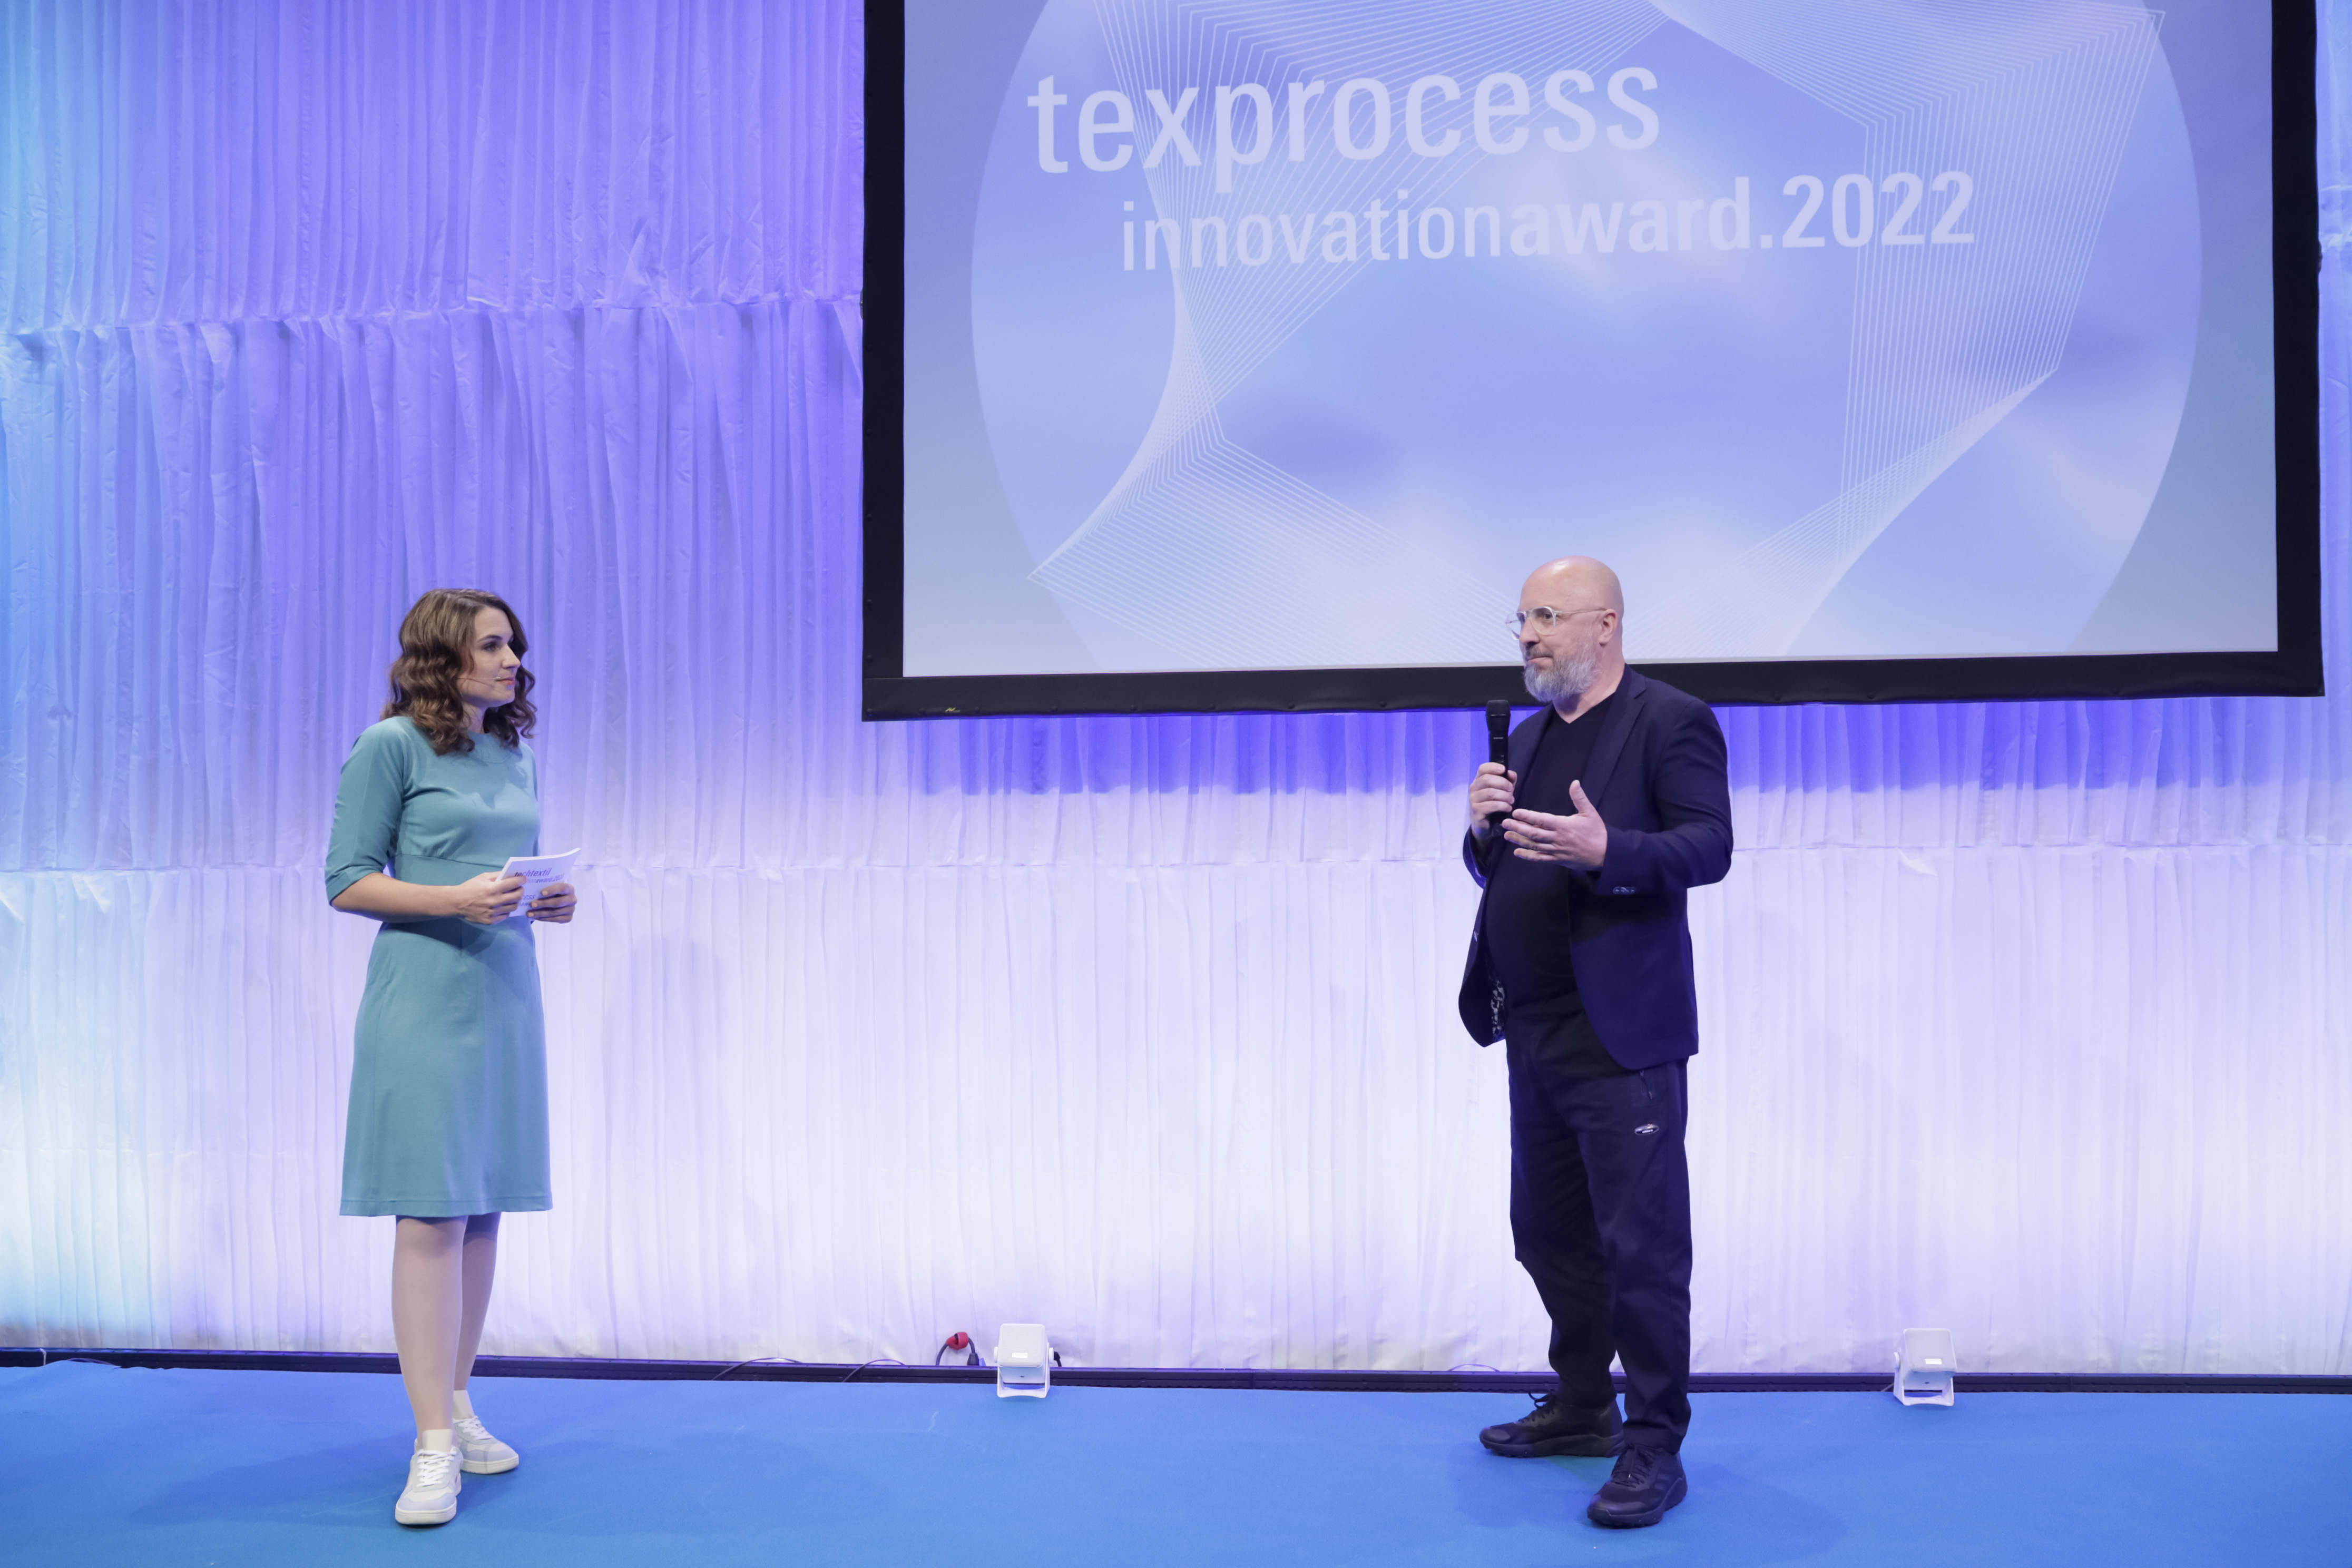 Techtextil + Texprocess Innovation Award 2022 / Julia Bauer & Walter Wählt